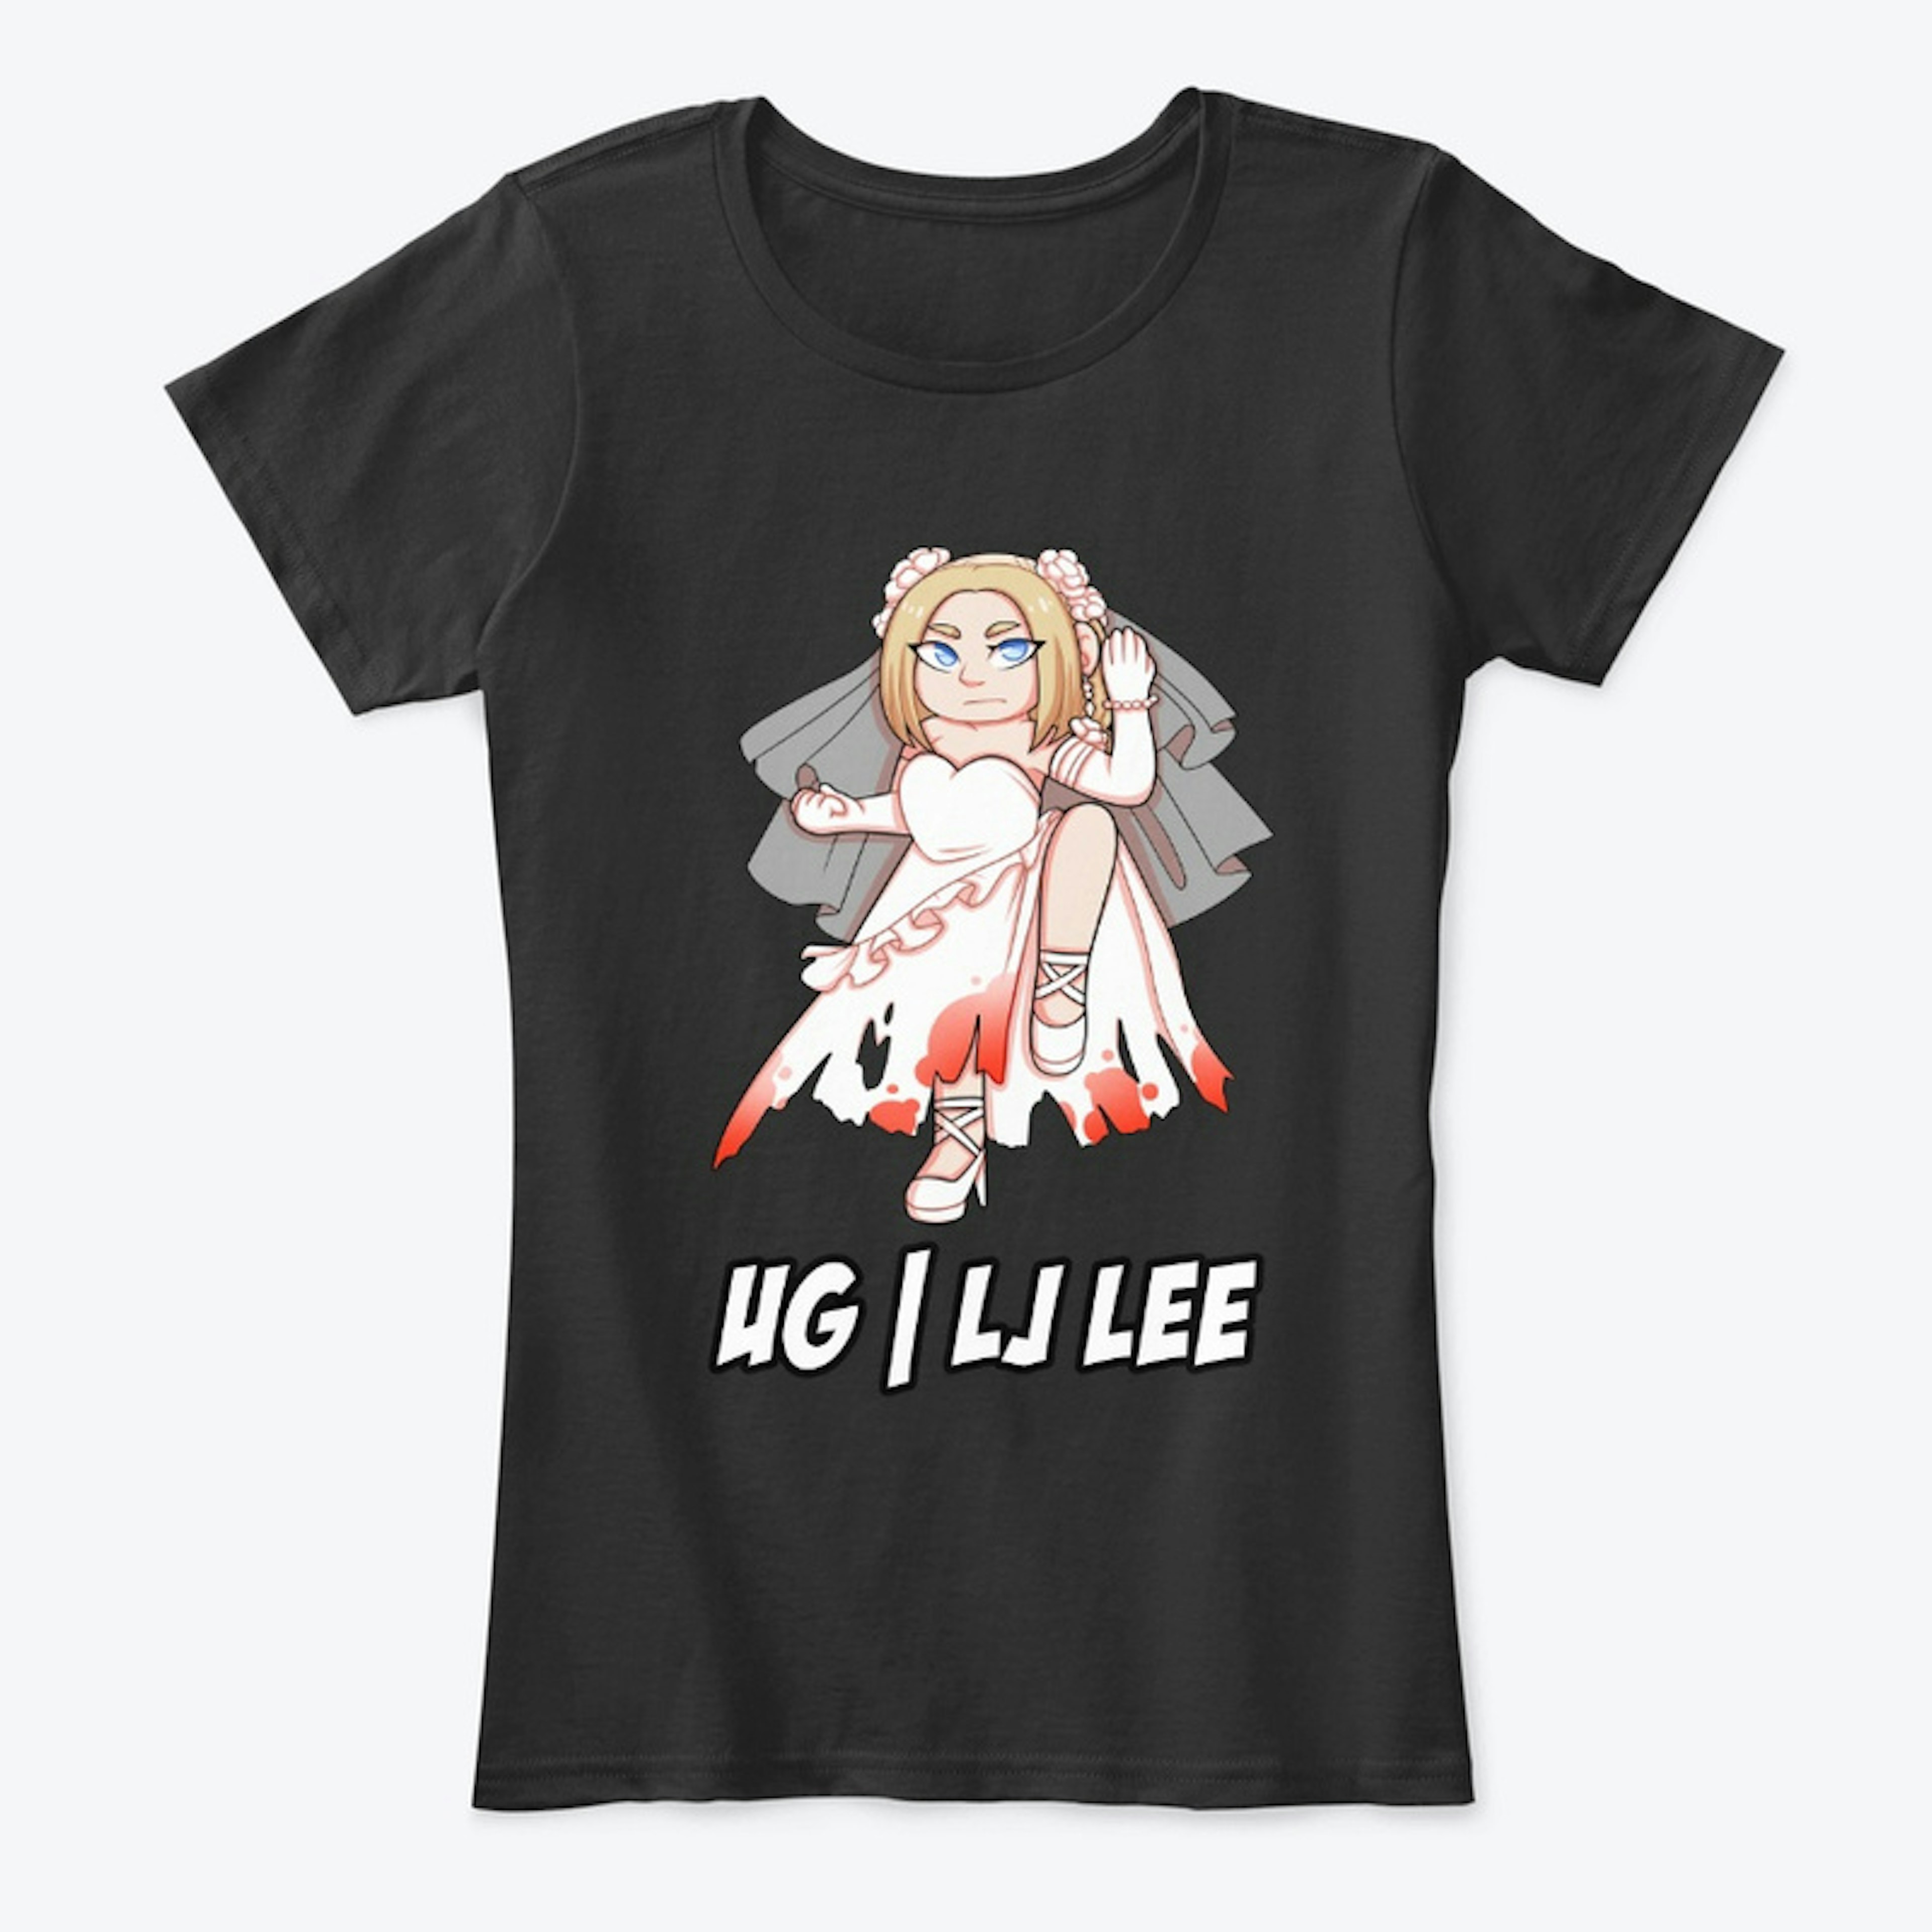 UG| LJ Lee T-Shirt